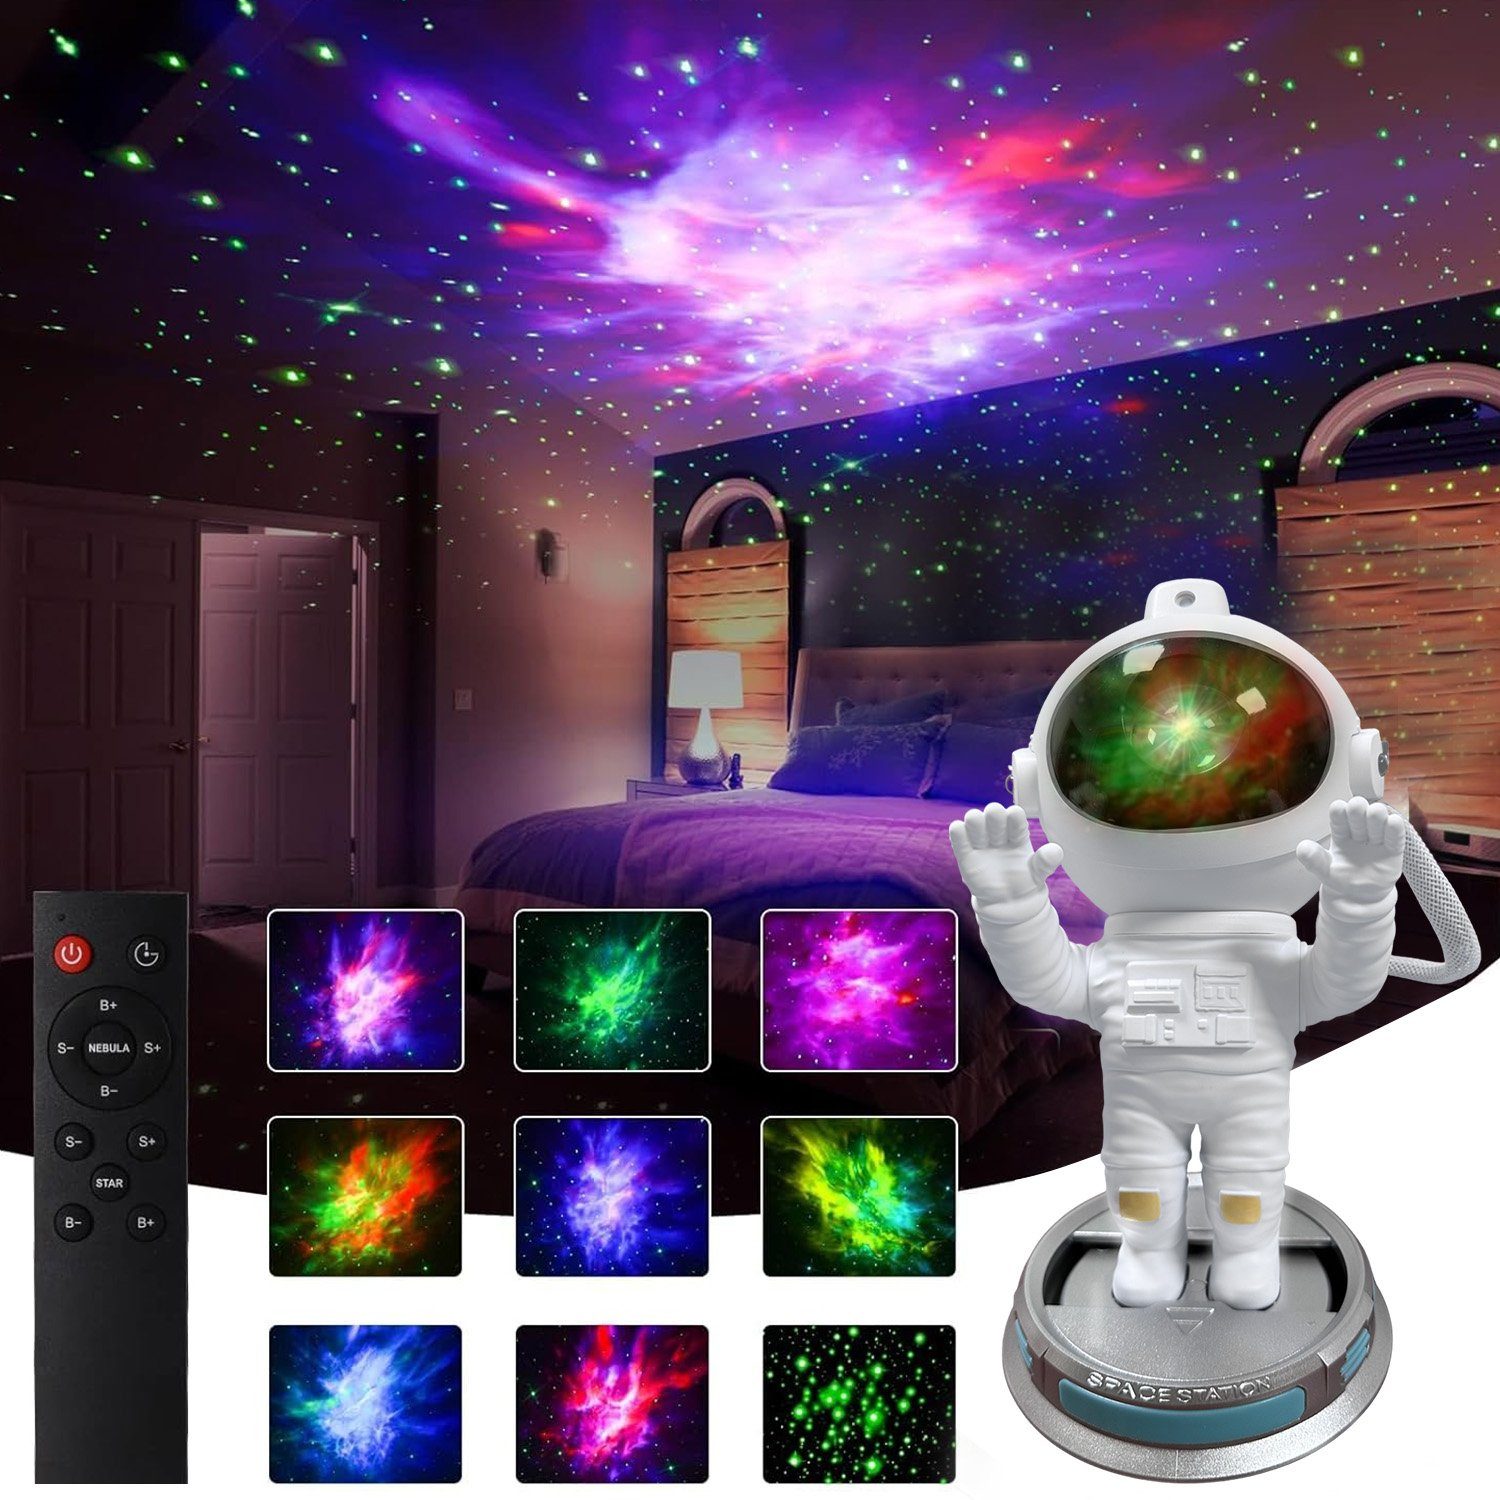 MUPOO LED-Sternenhimmel LED Nachttischlampe Sternenhimmel Projektionslampe Galaxy Projector, Fernbedienung&Timer, 360° verstellbar, LED Nachtlicht Astronaut Projektor zwei Hände erhoben